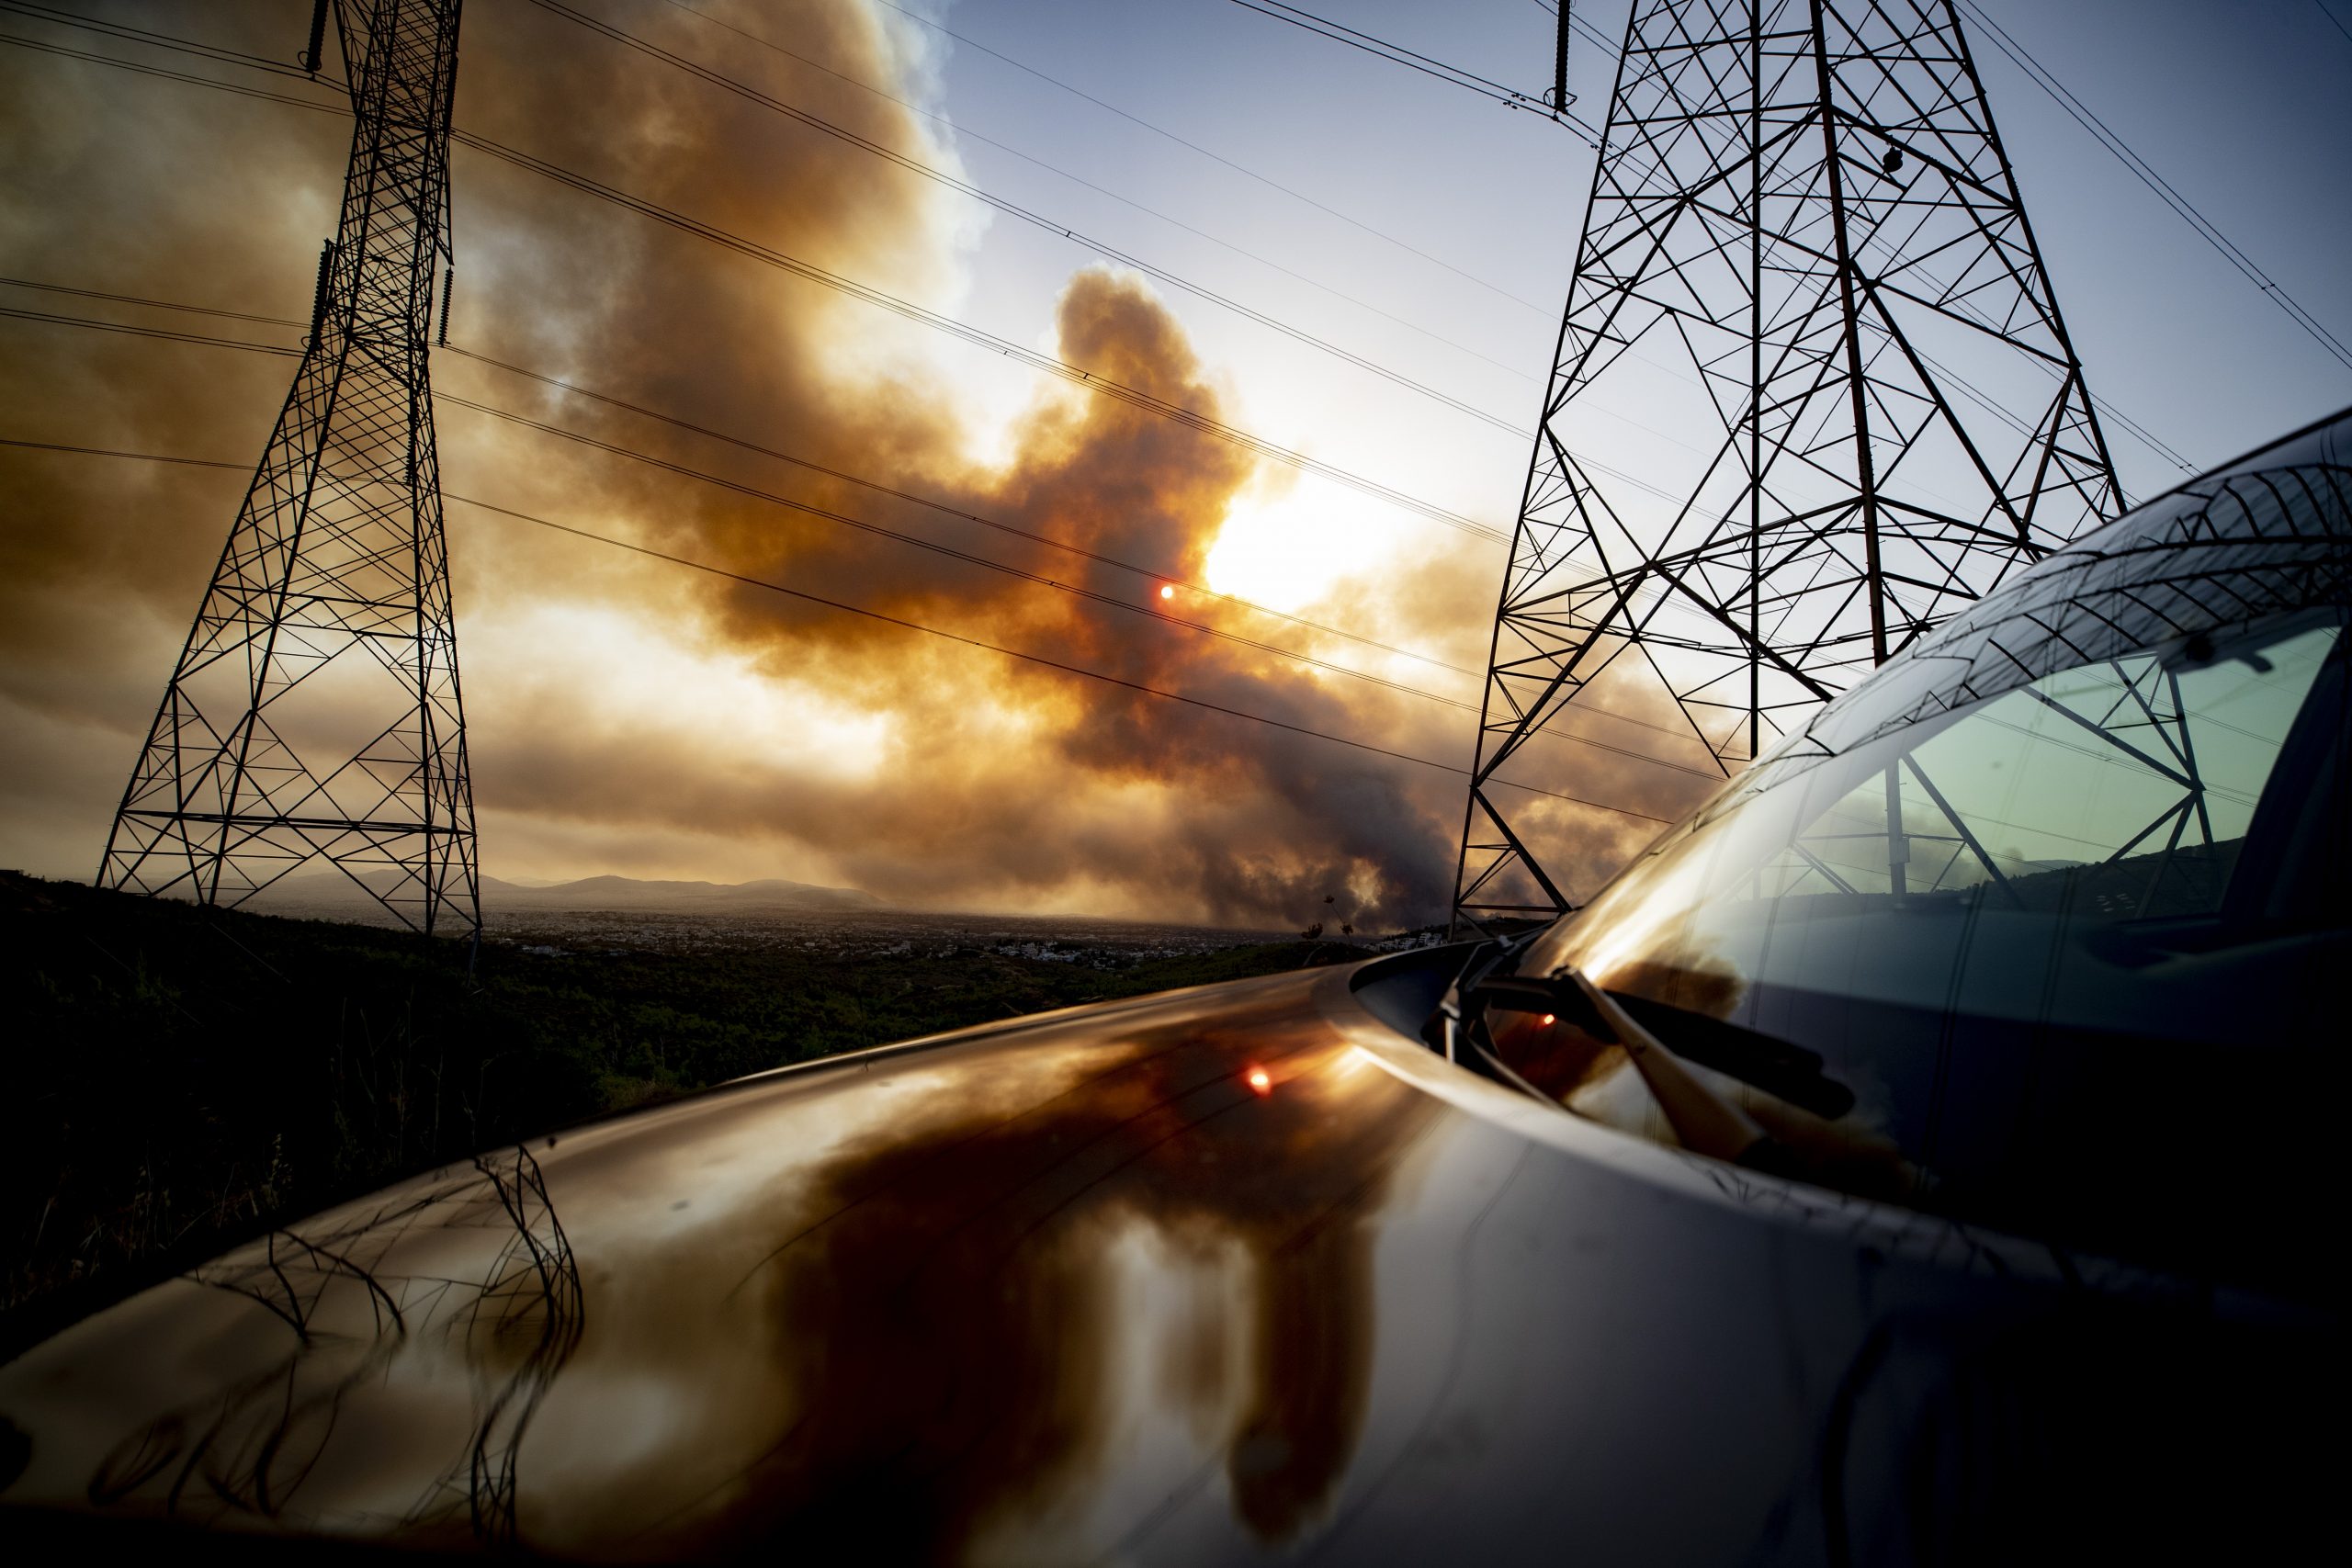 Φωτιές - Τεράστια καταστροφή του δικτύου διανομής στις πυρόπληκτες περιοχές